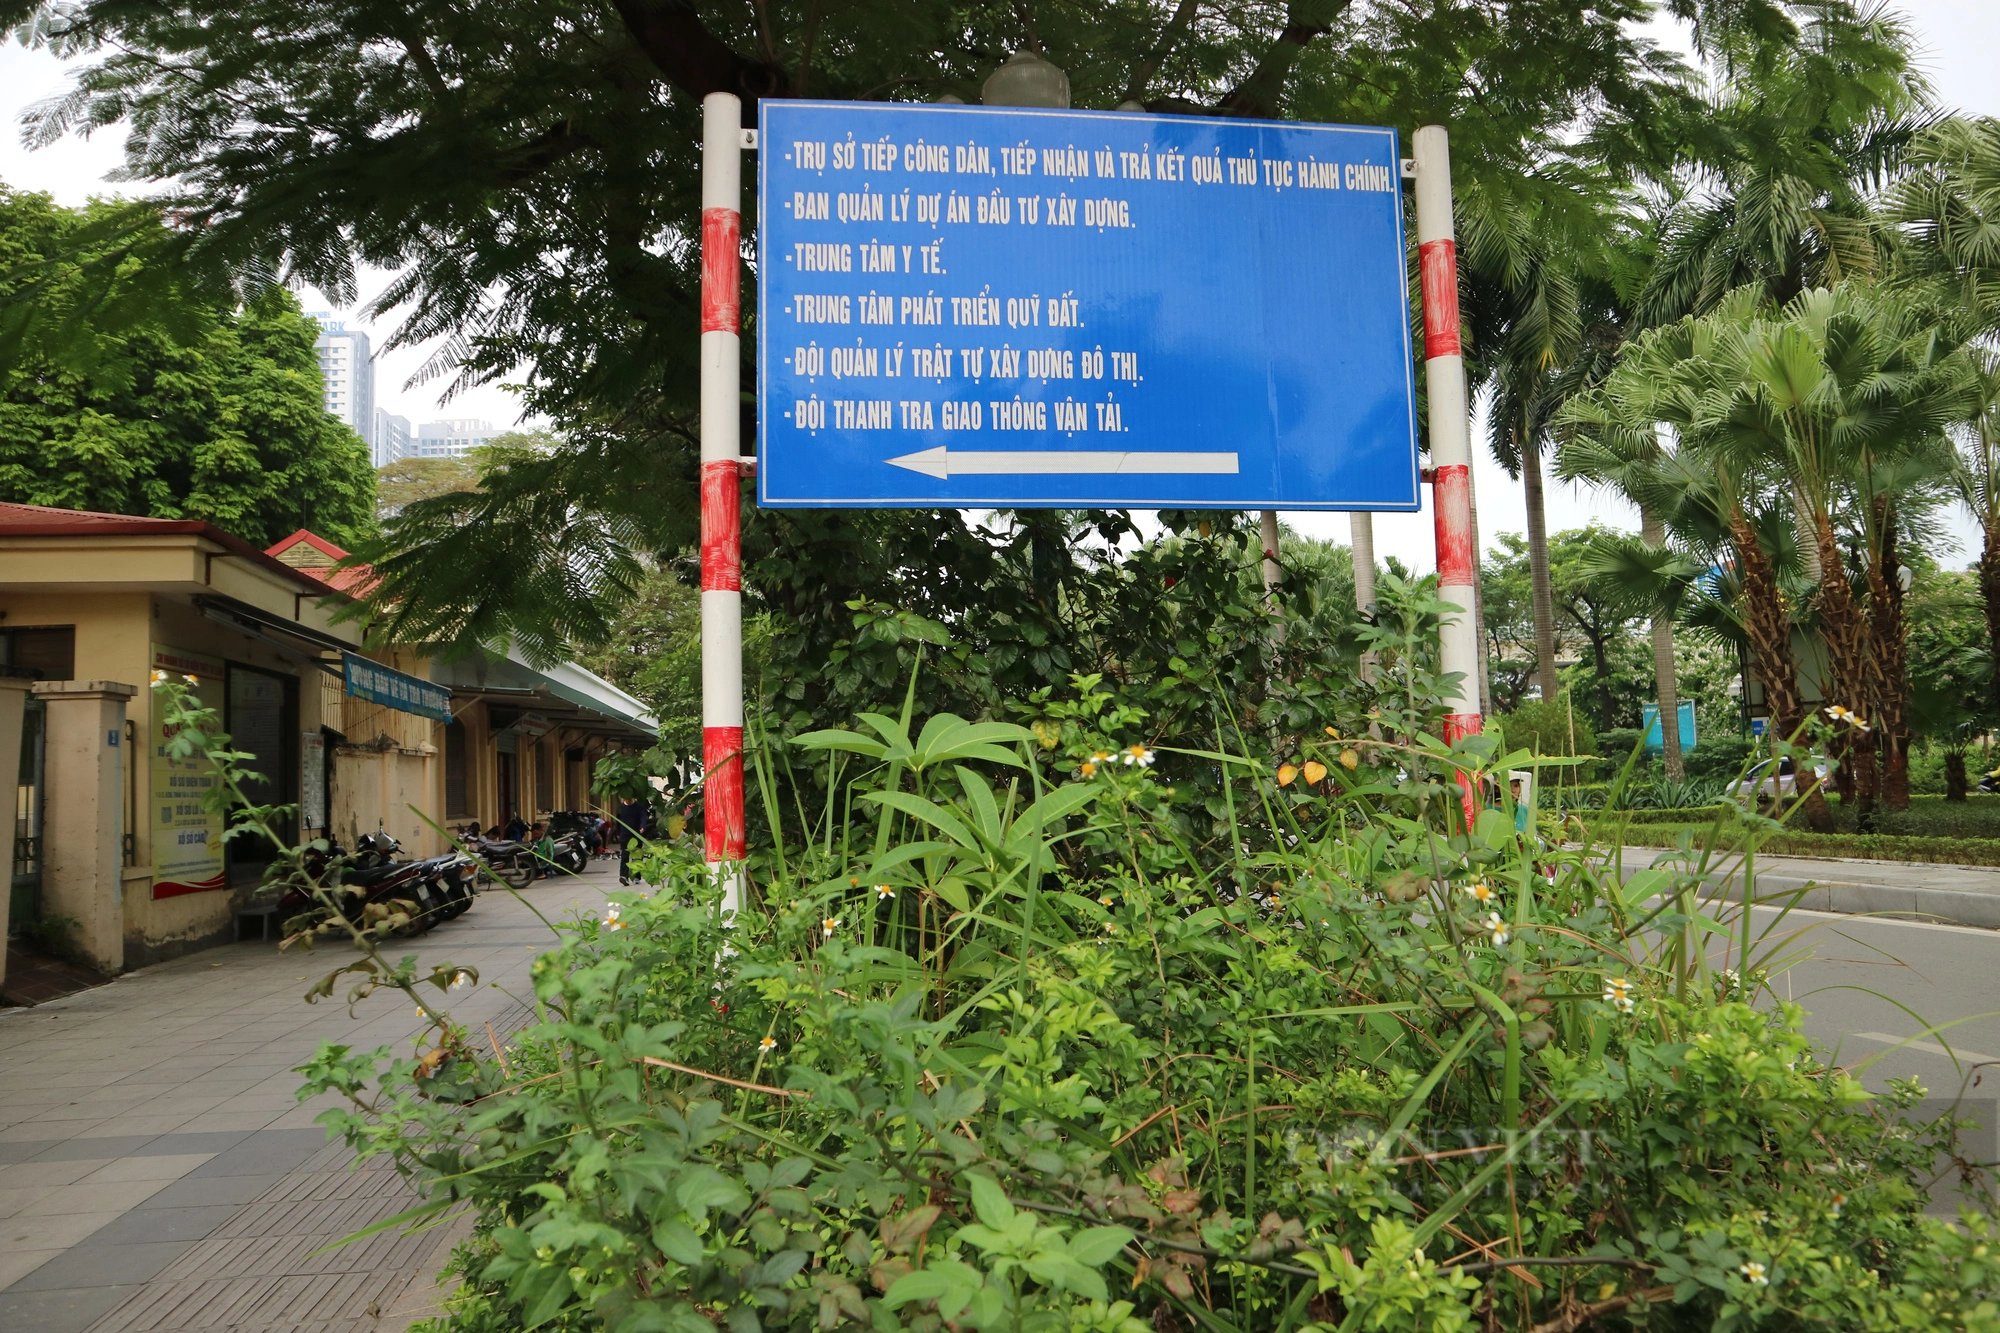 Cỏ dại mọc như &quot;rừng&quot; trên phố Nguyễn Cơ Thạch, Hà Nội - Ảnh 1.